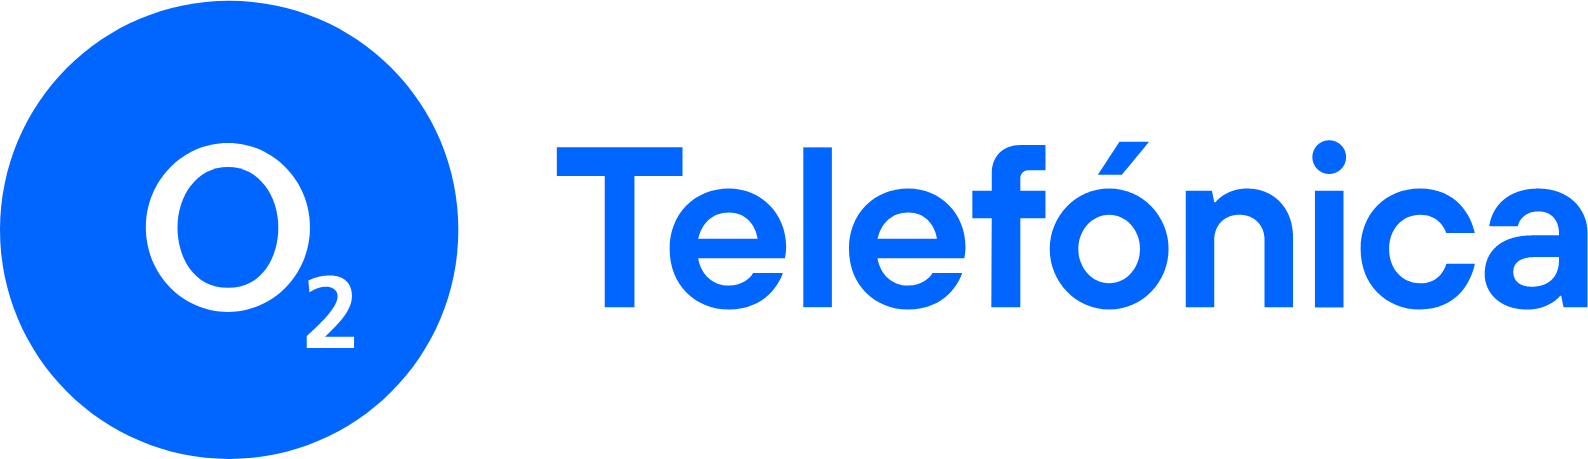 Telefónica Deutschland (O2) logo large (transparent PNG)